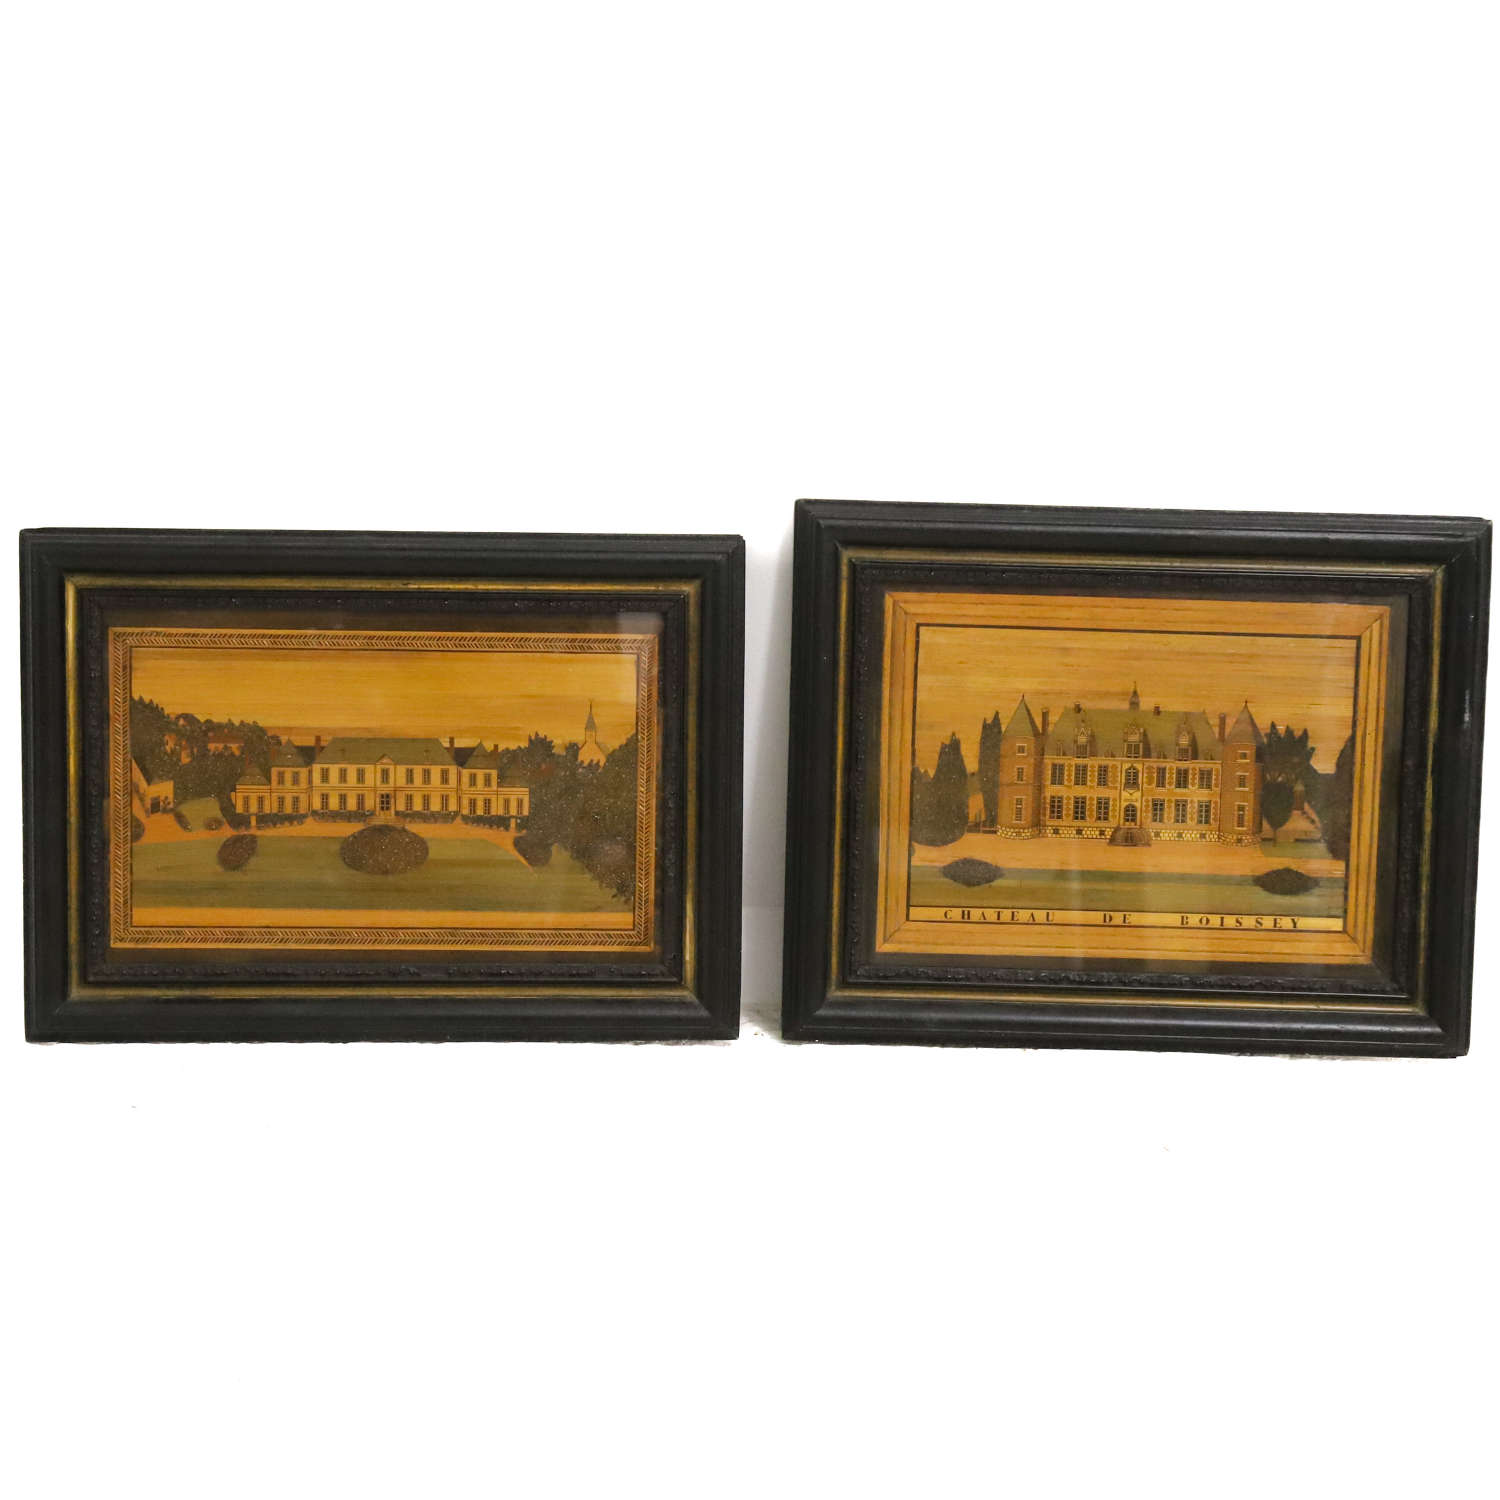 Pair of Straw Pictures Chateau de Boissey original frames France c1890